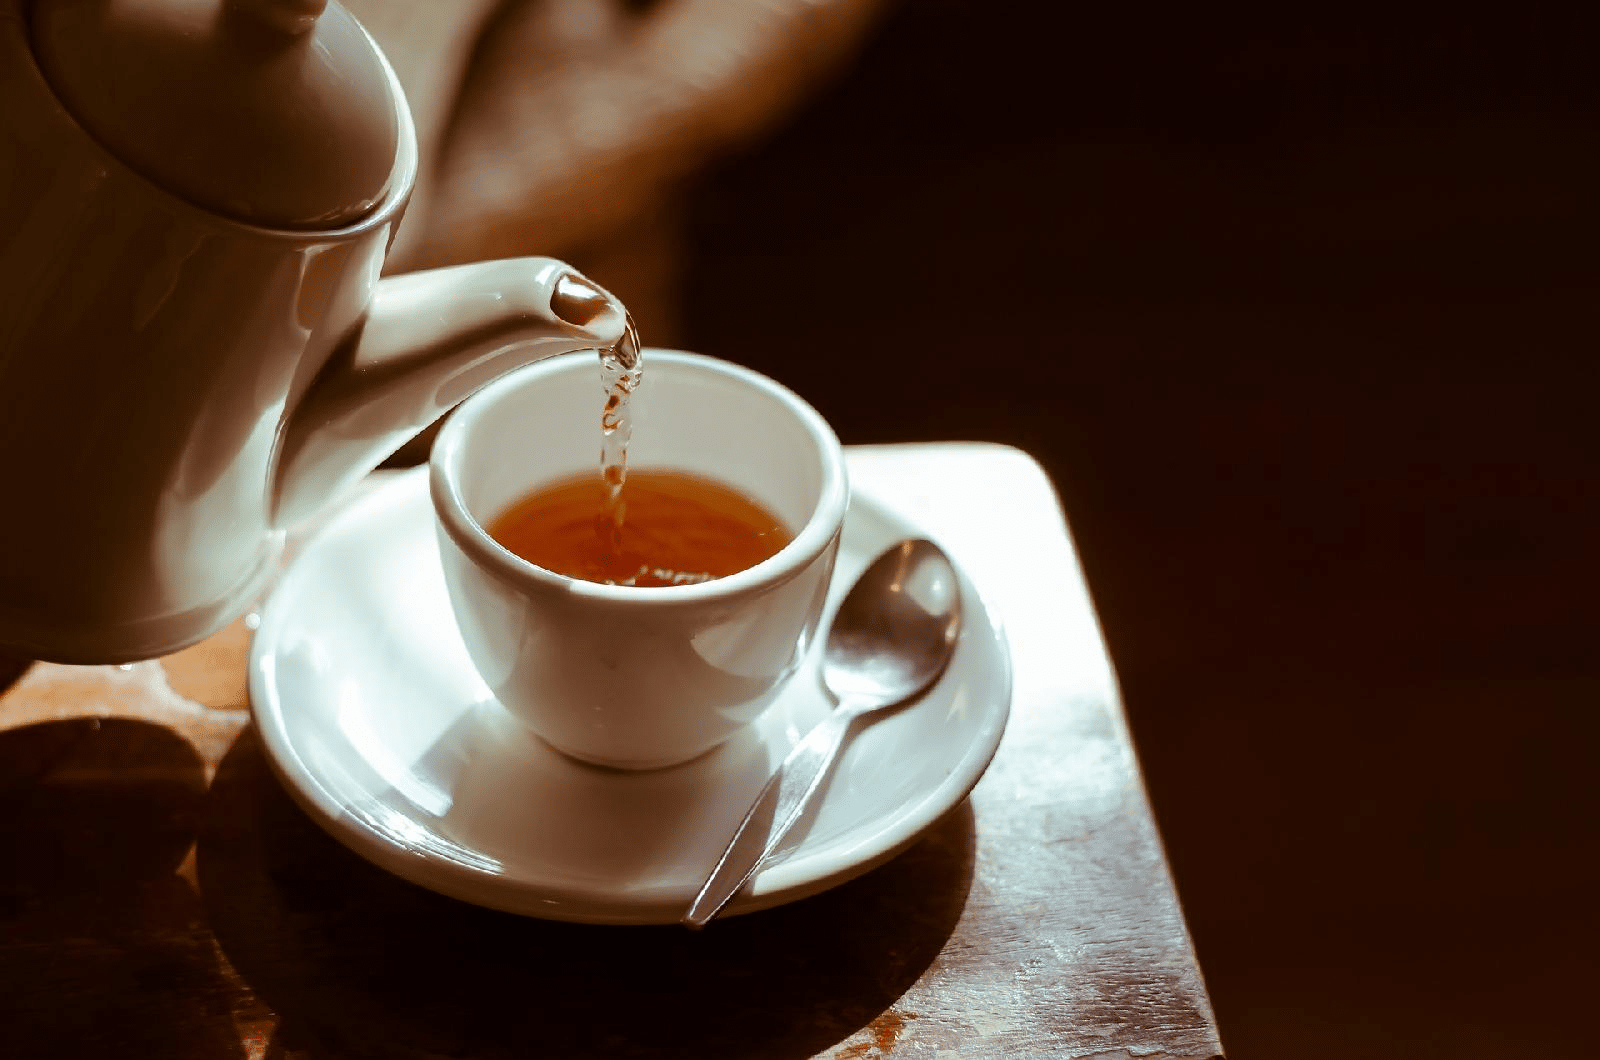 bienfaits du thé sur le corps et ses inconvénients